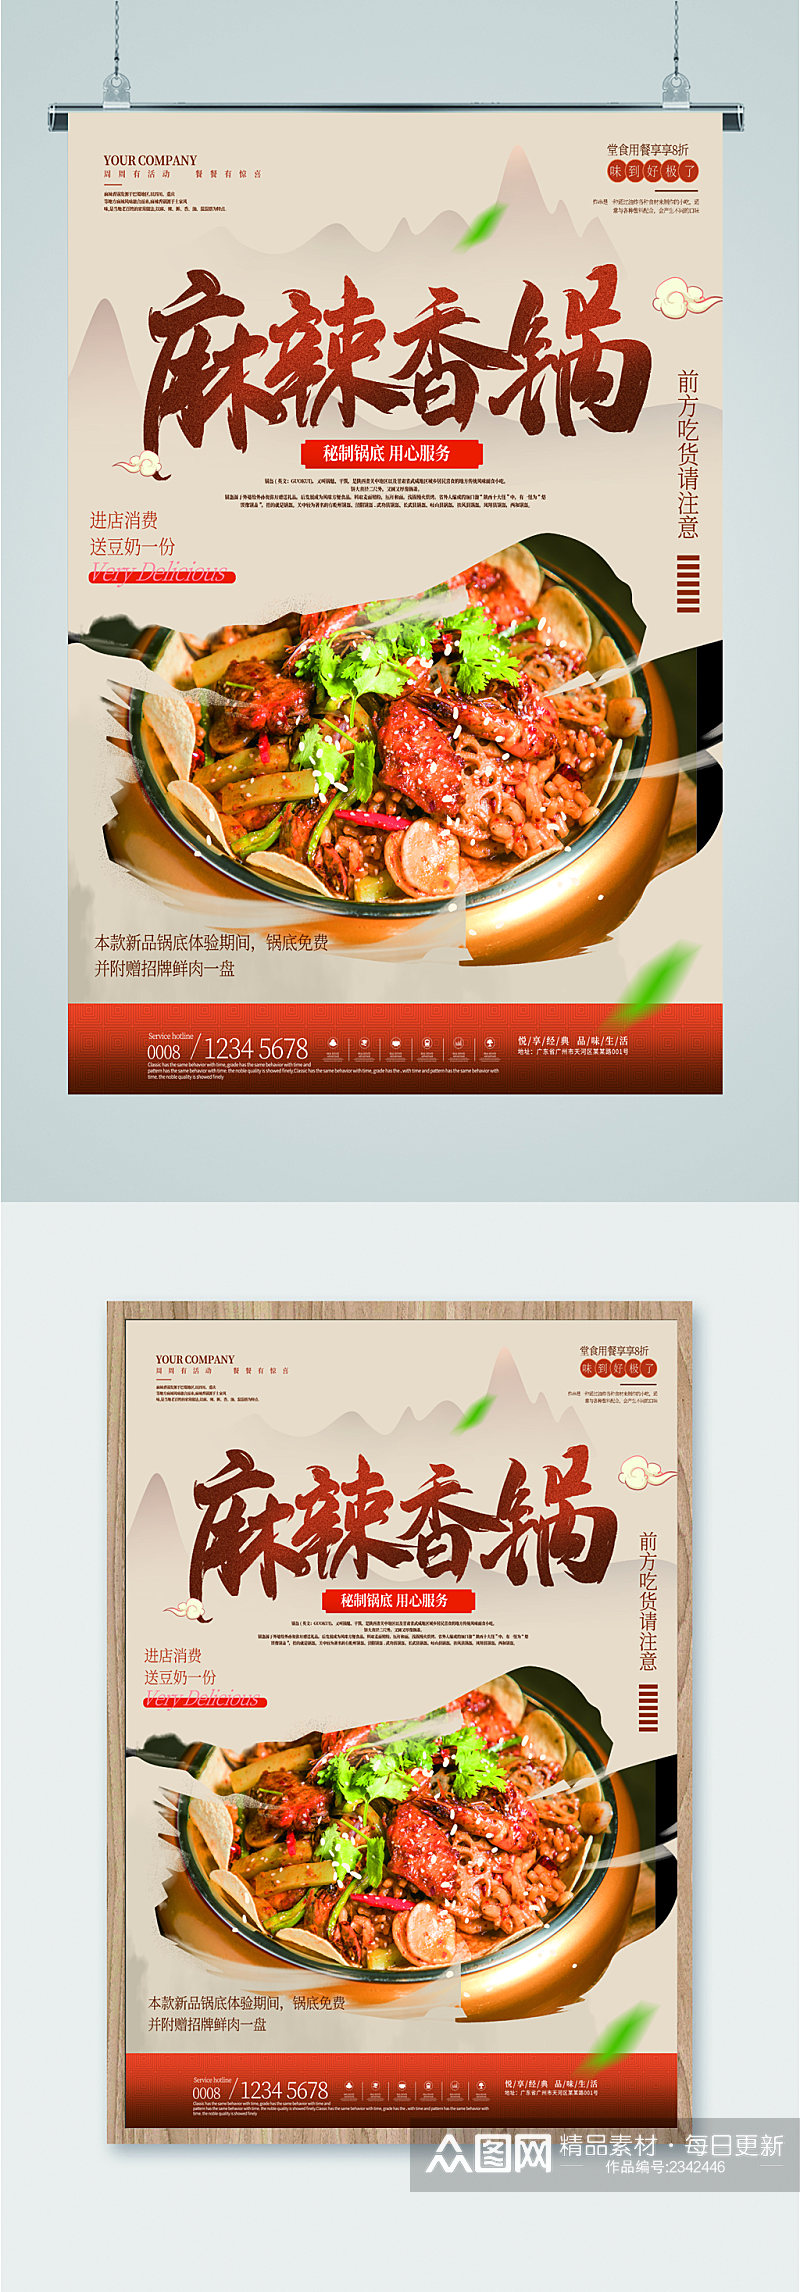 麻辣香锅美食宣传海报素材